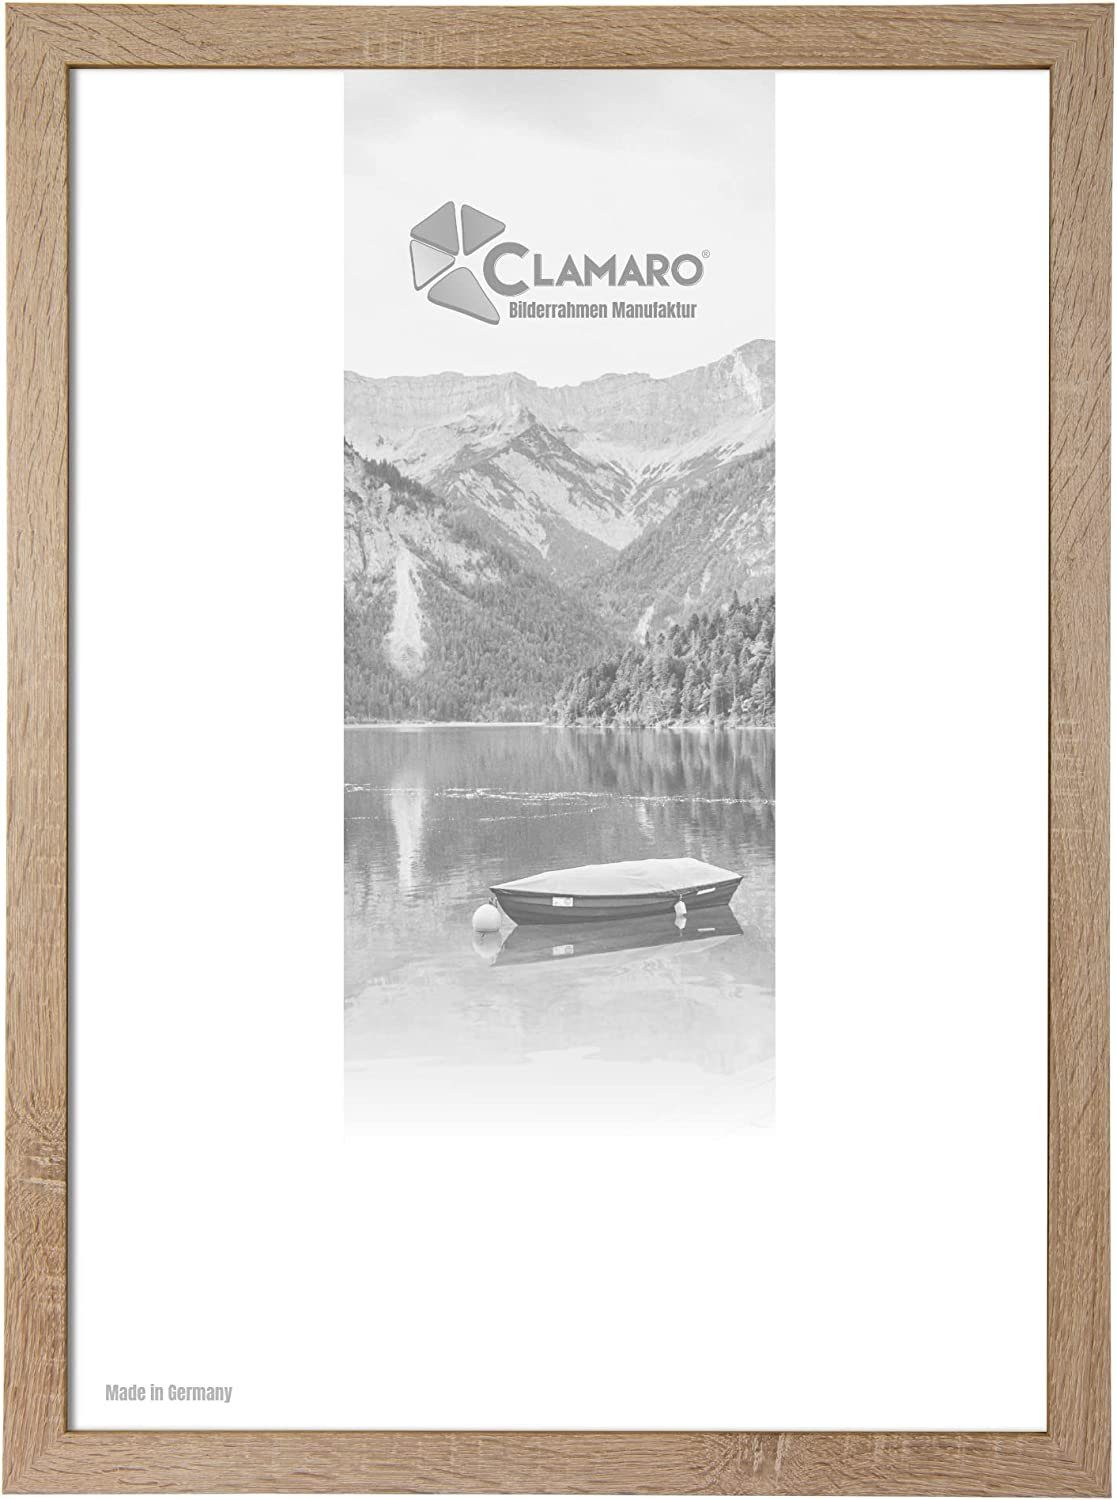 Clamaro Bilderrahmen Bilderrahmen Eiche Sonoma CLAMARO Collage nach Maß FSC® Holz Modern eckig M3016 13x18 in Eiche Sonoma